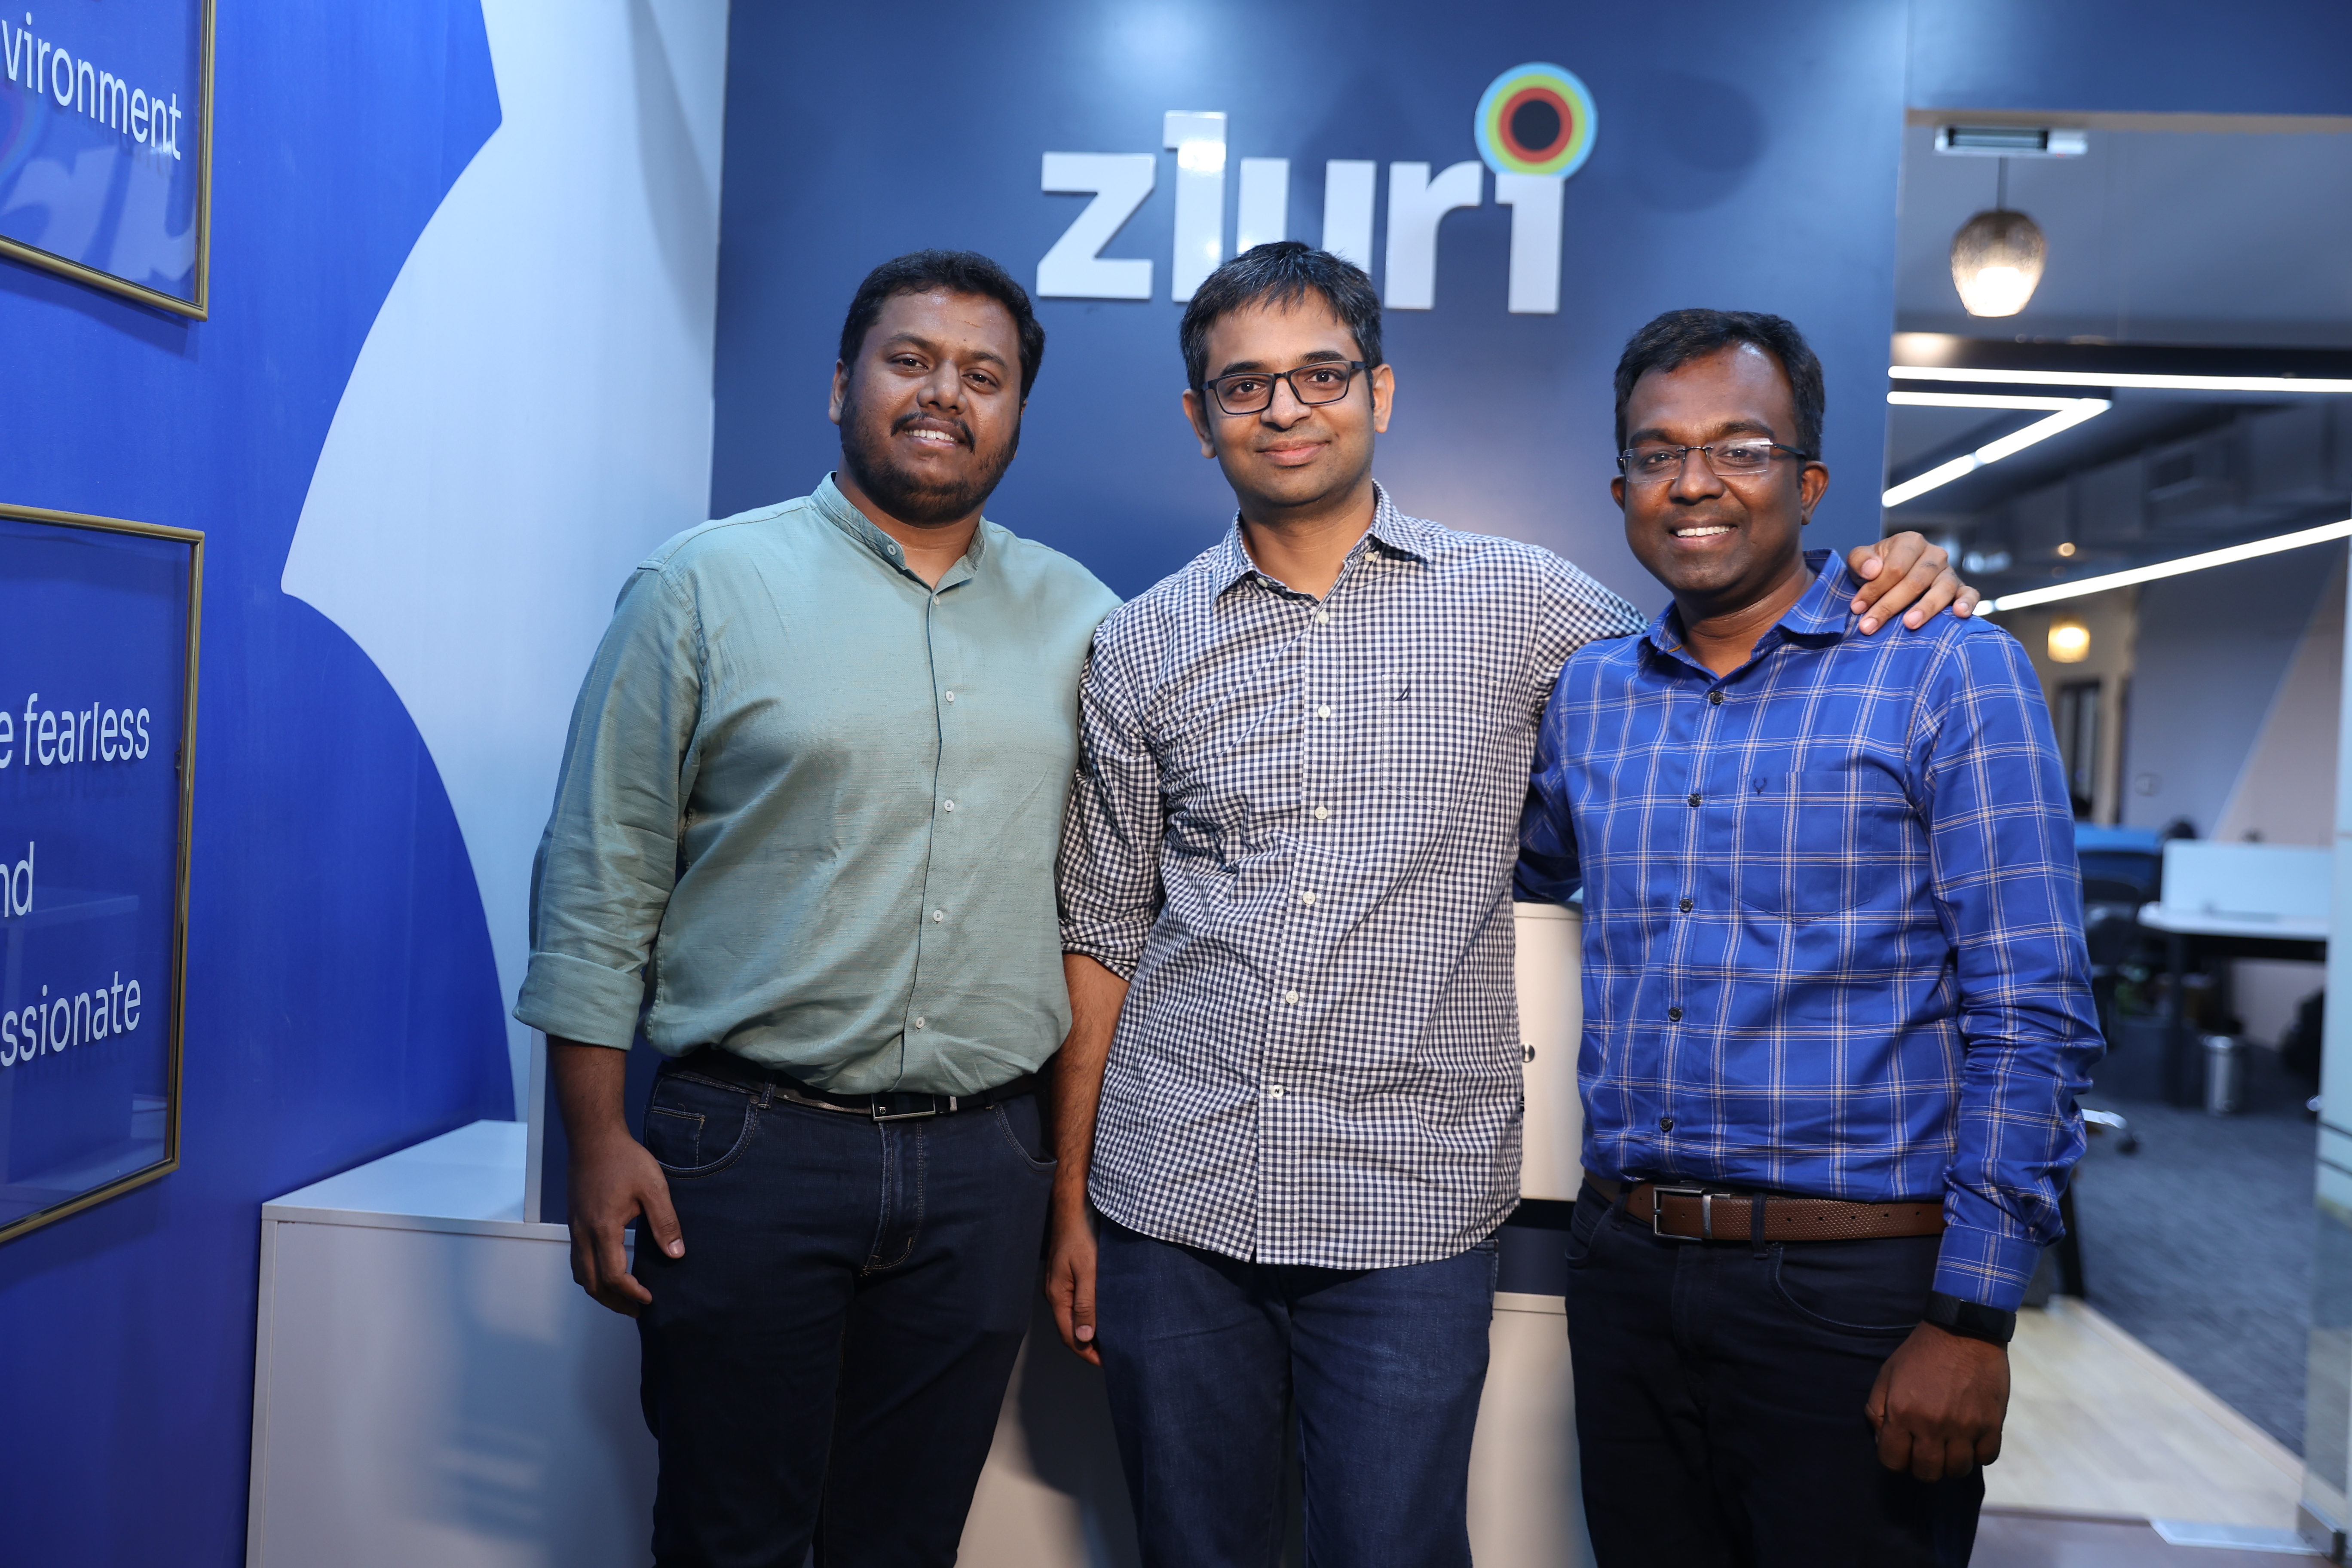 Zluri co-founders: (L to R) Chaithanya Yambari, Ritish Reddy and Sethu Meenakshisundaram